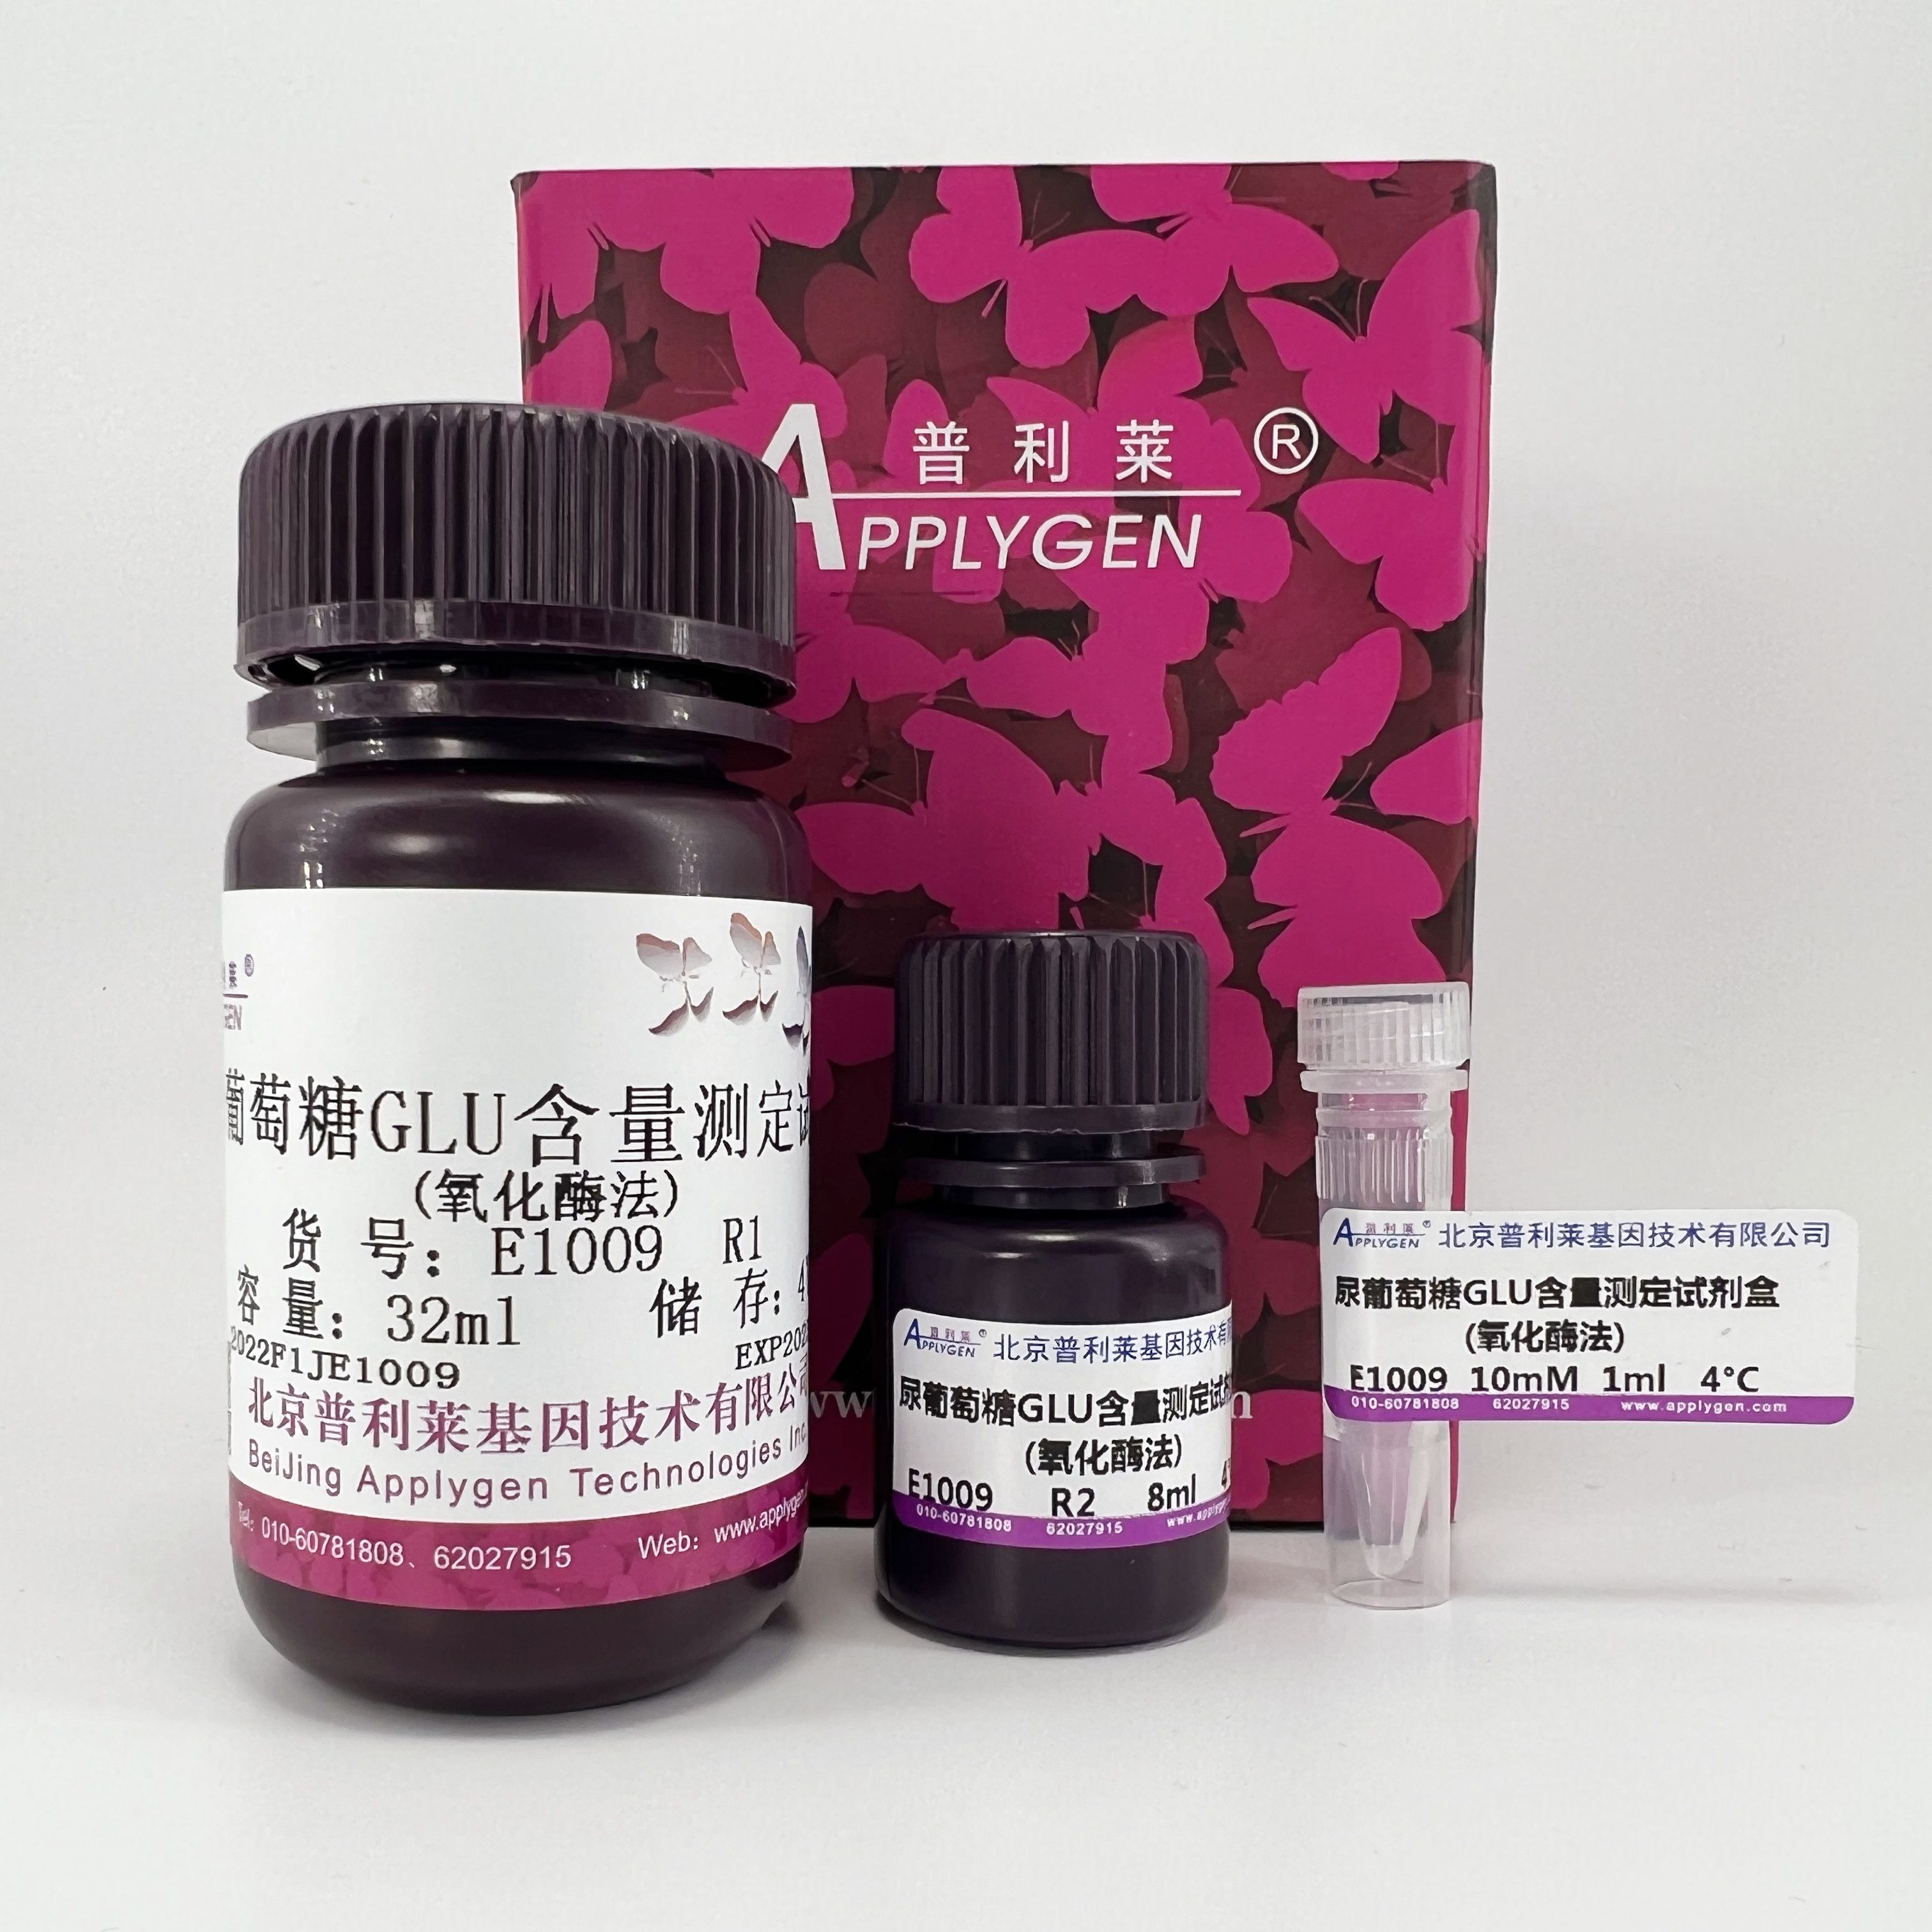 尿葡萄糖酶法测定试剂盒   E1009   厂家直销，提供OEM定制服务，大包装更优惠 